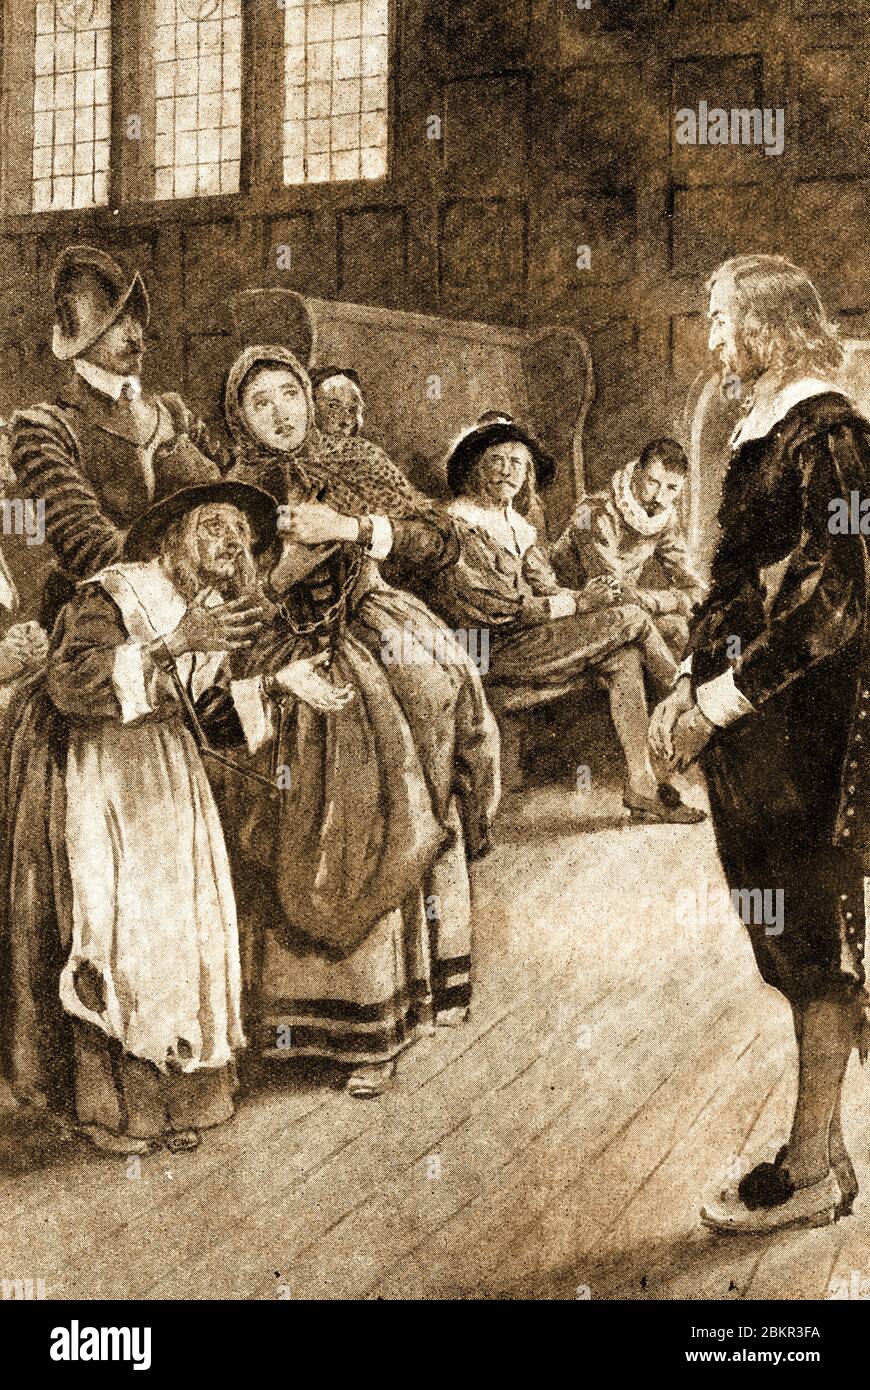 William Harvey (1578 – 1657) è stato un medico inglese specializzato in anatomia e fisiologia. Era il primo medico noto a descrivere la circolazione sistemica del sangue ed era ben noto scettico riguardo la credenza generale nella stregoneria a quel tempo. In questa scena trova tre streghe accusate non colpevoli di un processo di stregoneria nel Lancashire nel quale ha presieduto. (1920 illustrazione) Foto Stock